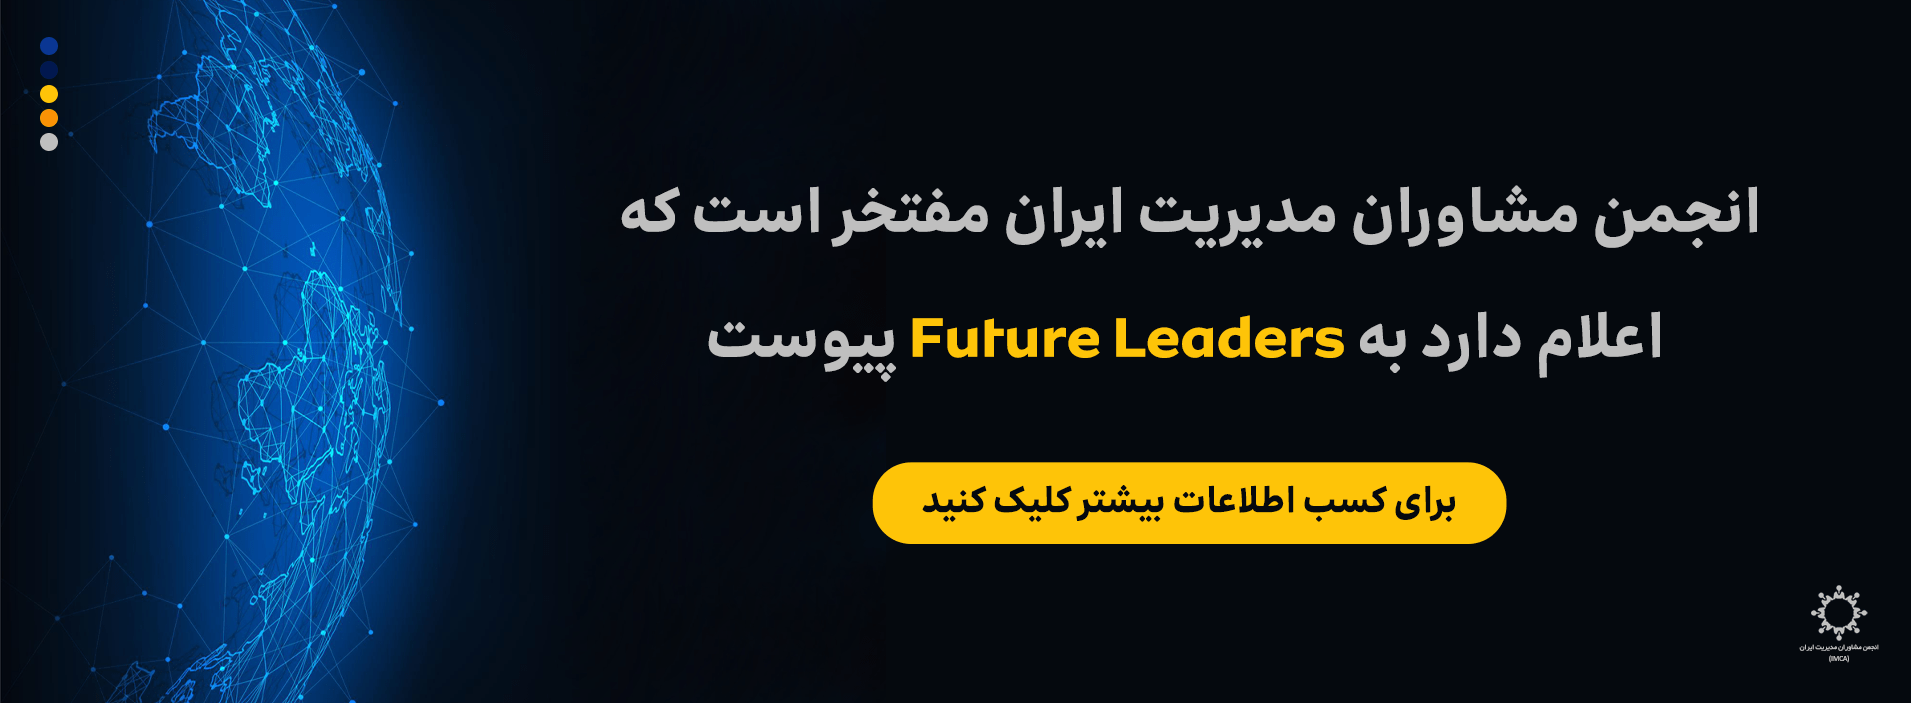 future-leaders